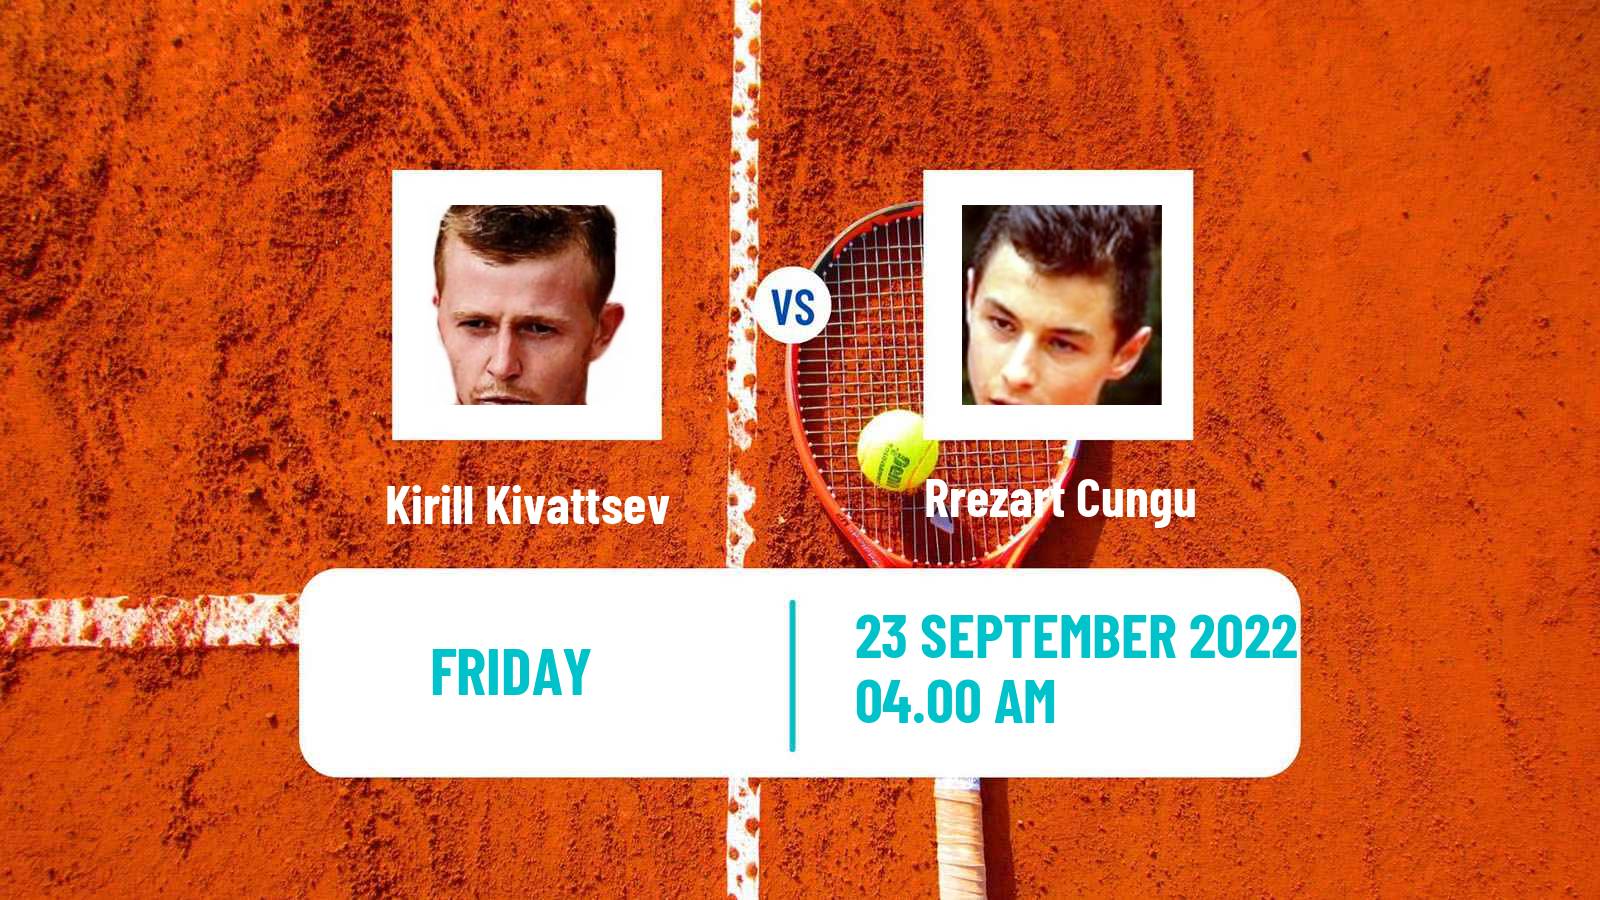 Tennis ITF Tournaments Kirill Kivattsev - Rrezart Cungu